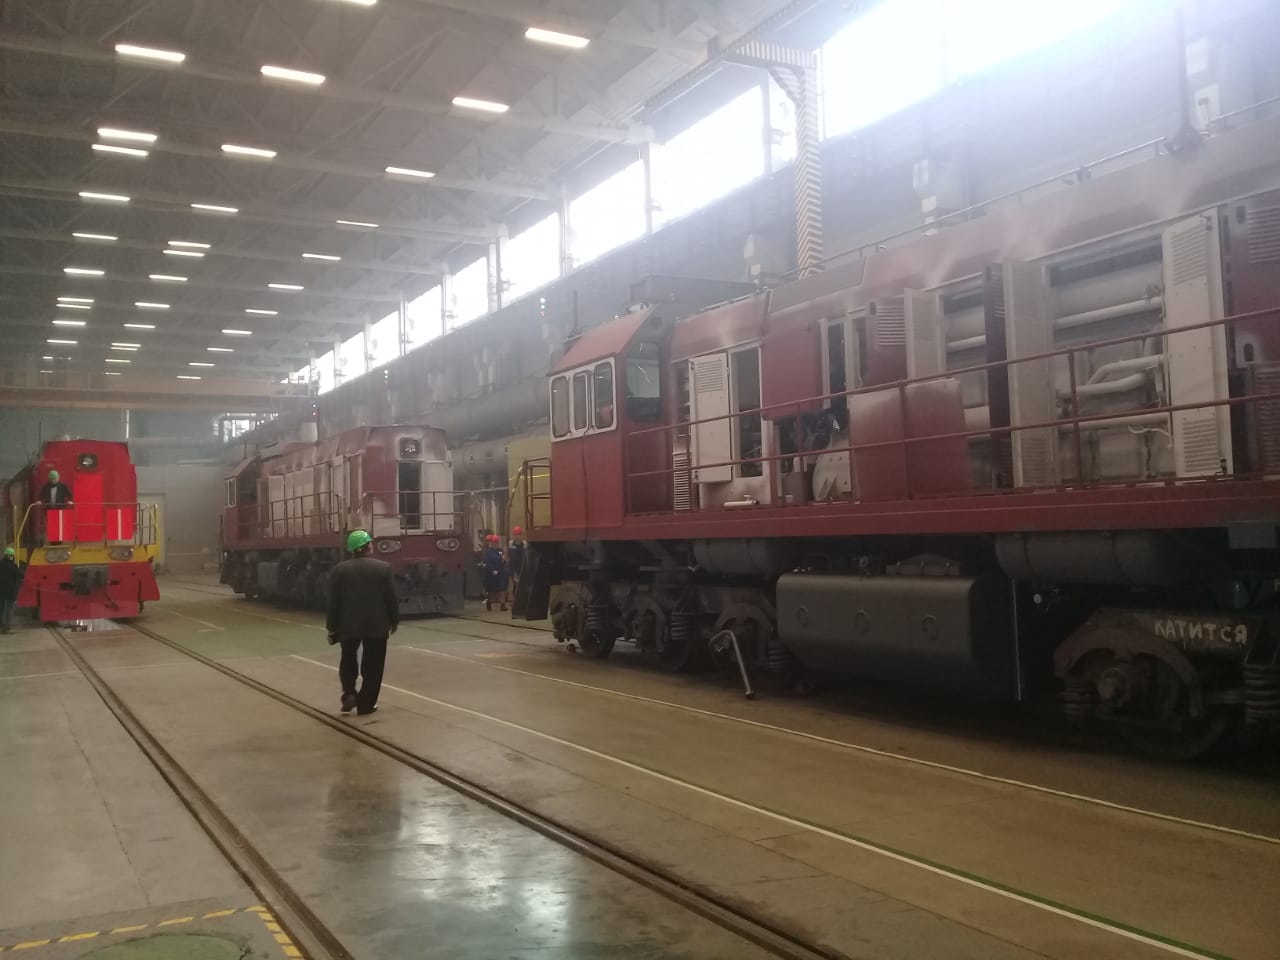  جولة لليوم السابع بمصنع جرارات السكة الحديد الروسى (25)